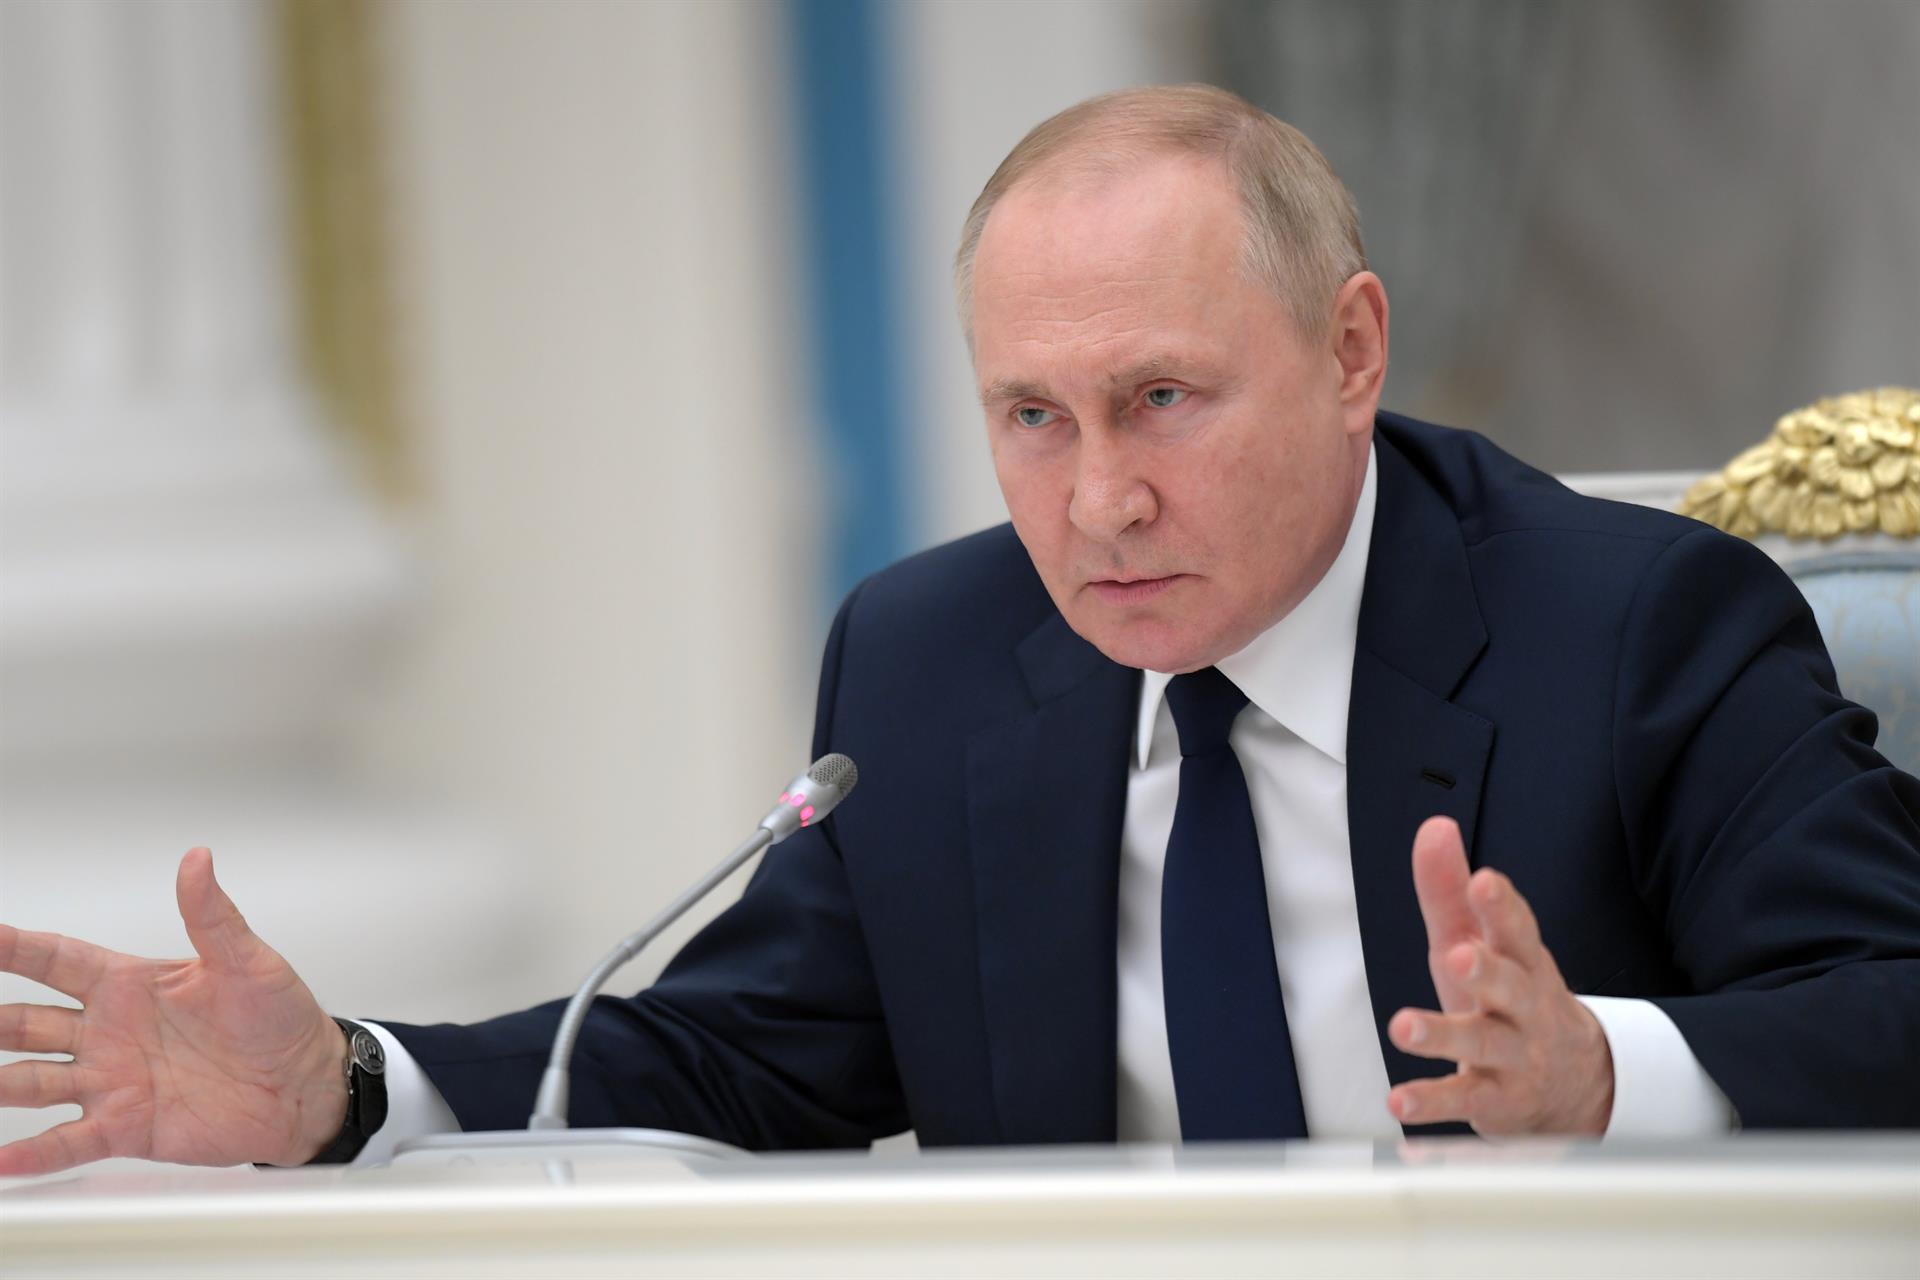 El Presidente de Rusia, Vladimir Putin, durante su intervención en la cámara baja de la Asamblea Federal de Rusia. -Agencia EFE 